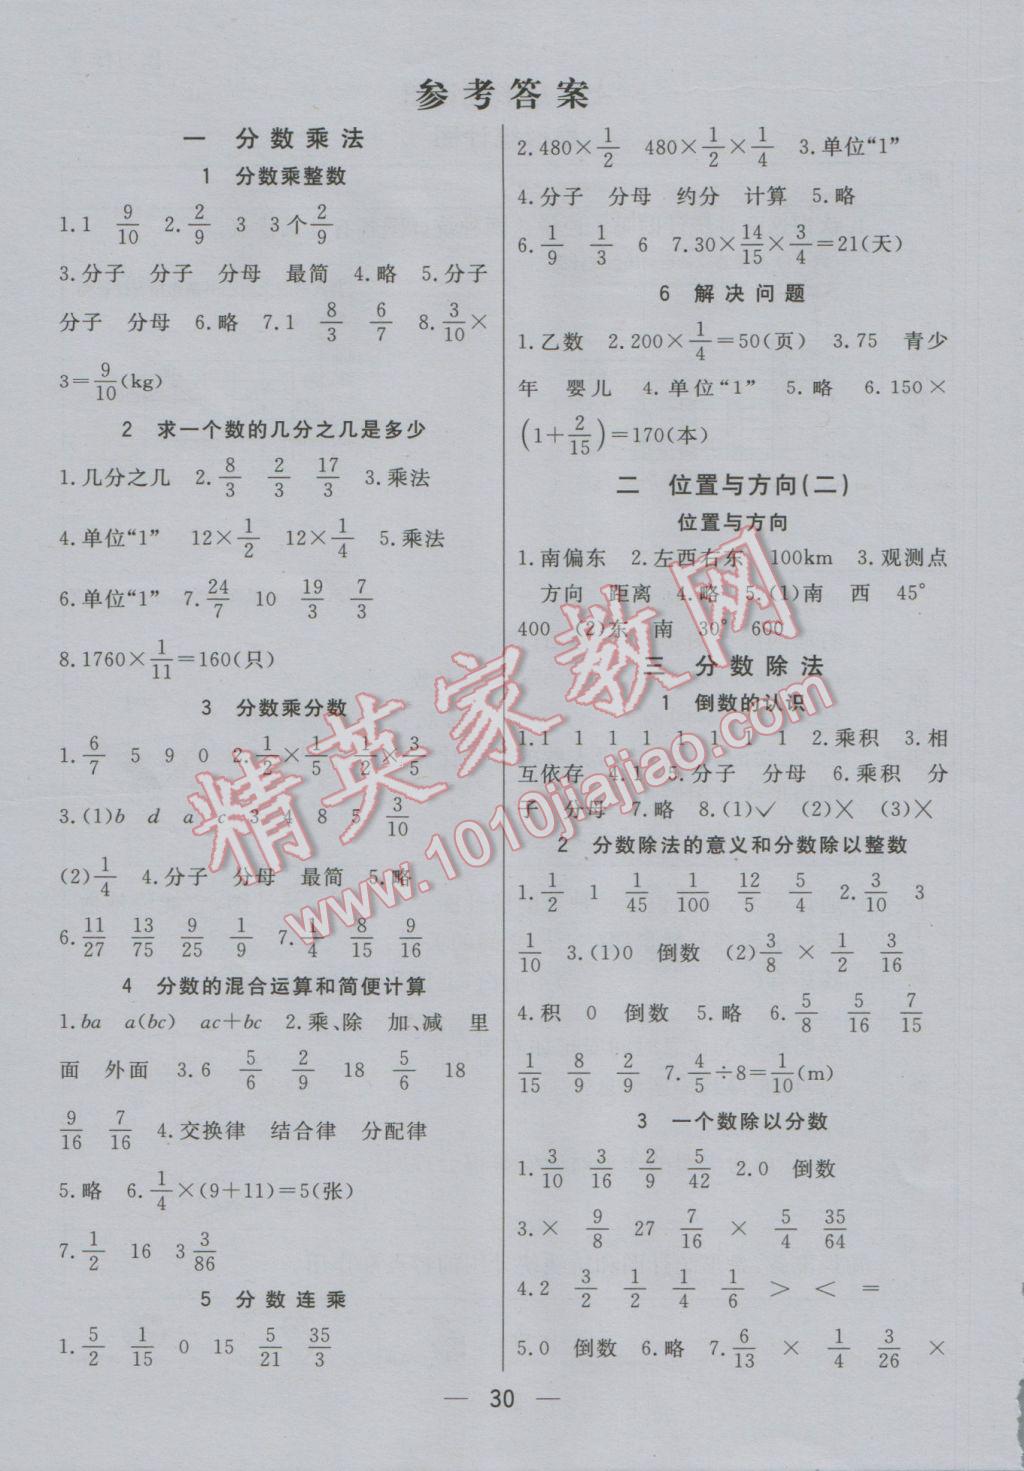 2016年七彩课堂六年级数学上册人教实验版 预习卡答案第24页